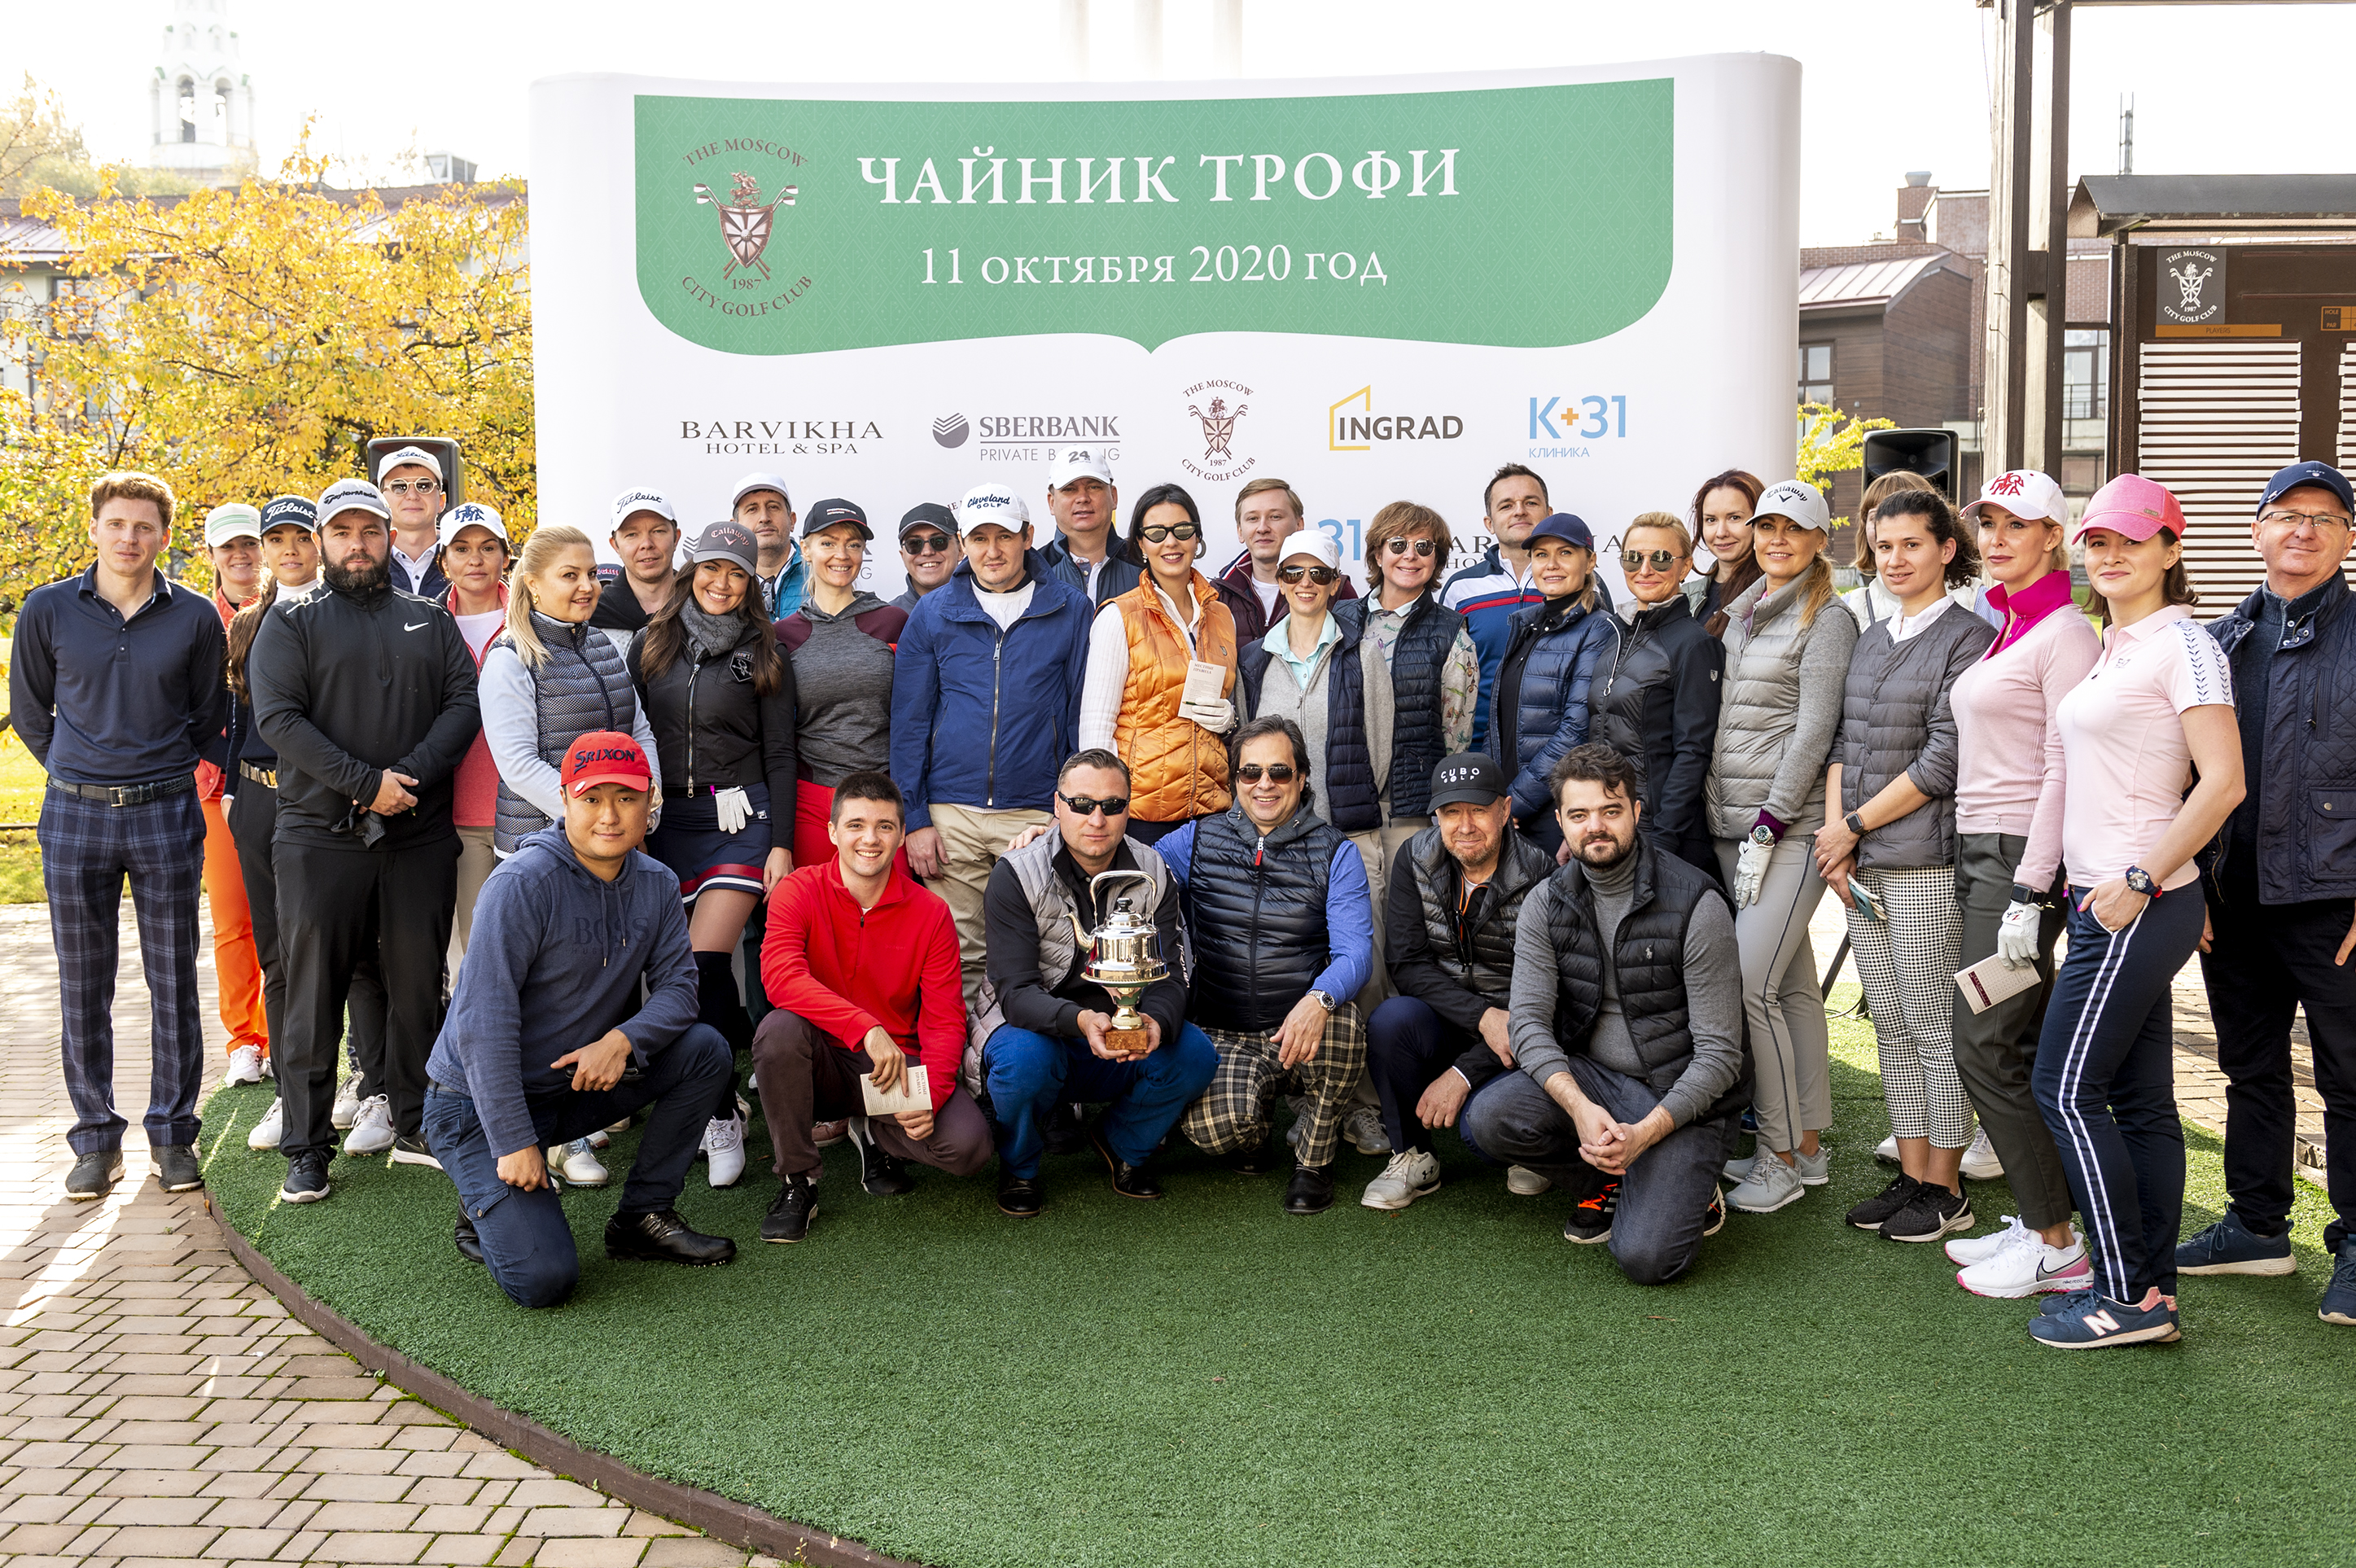 11 октября в Московском городском Гольф Клубе состоялся ежегодный турнир для начинающих гольфистов «Чайник Трофи».